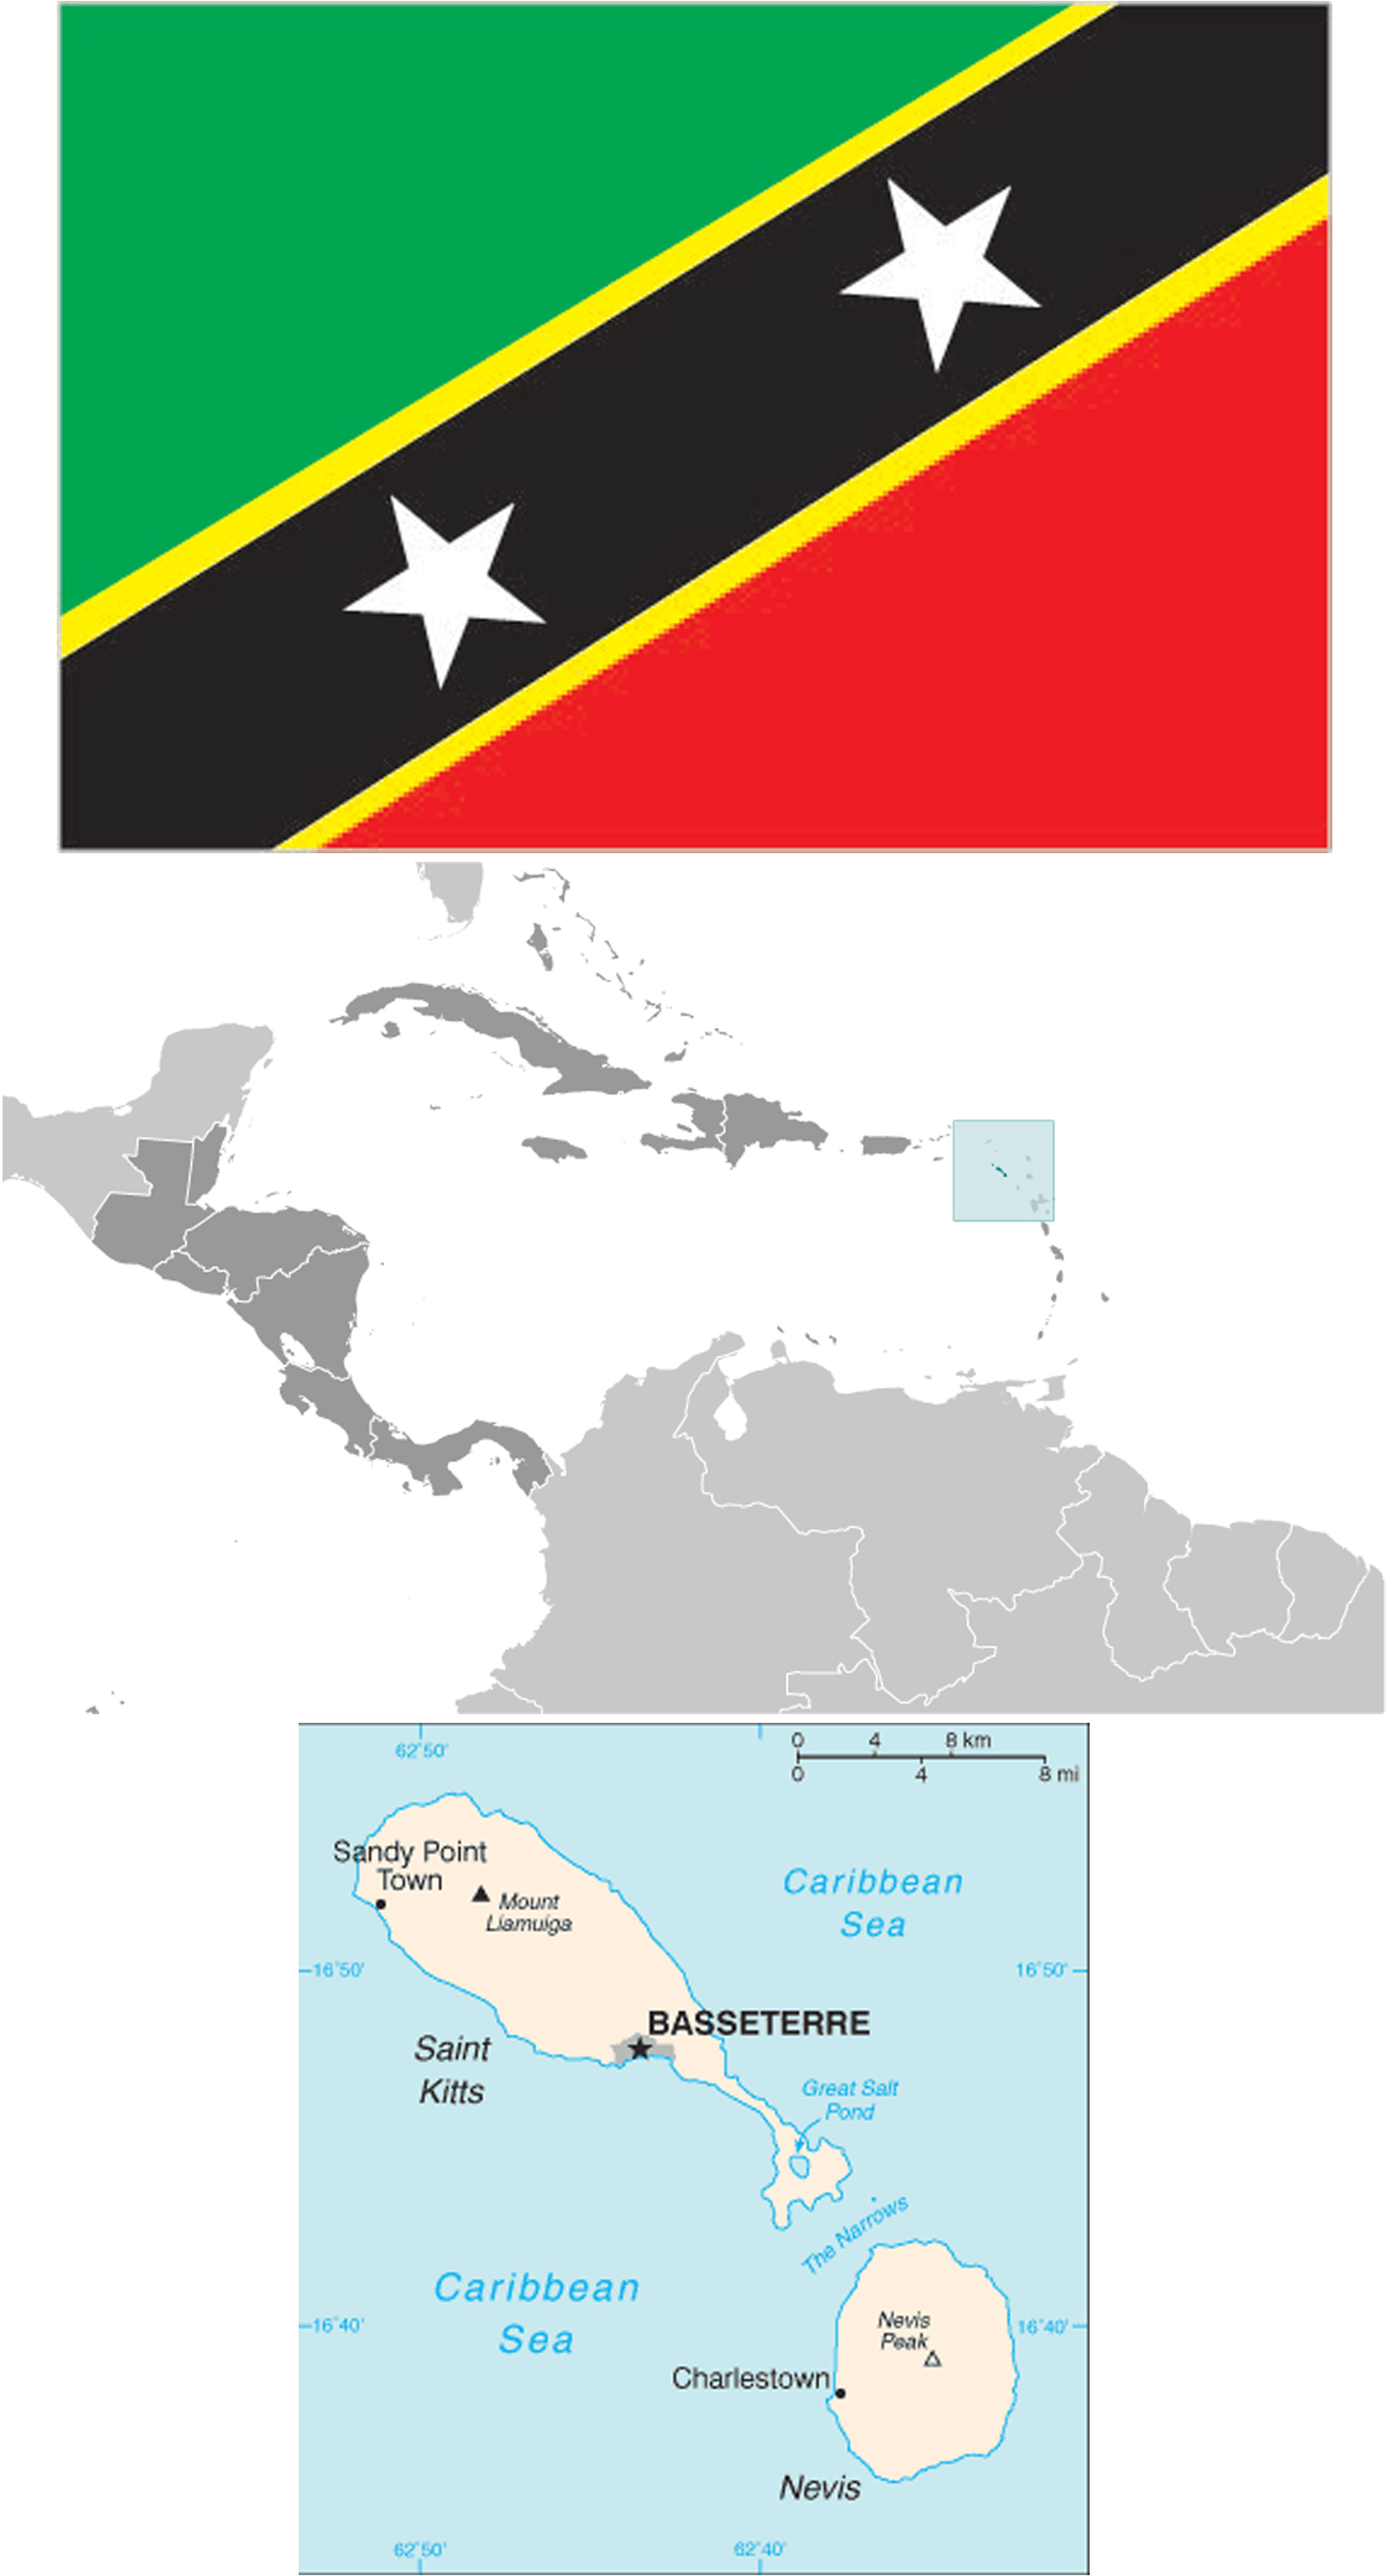 Saint Kitts and Nevis News